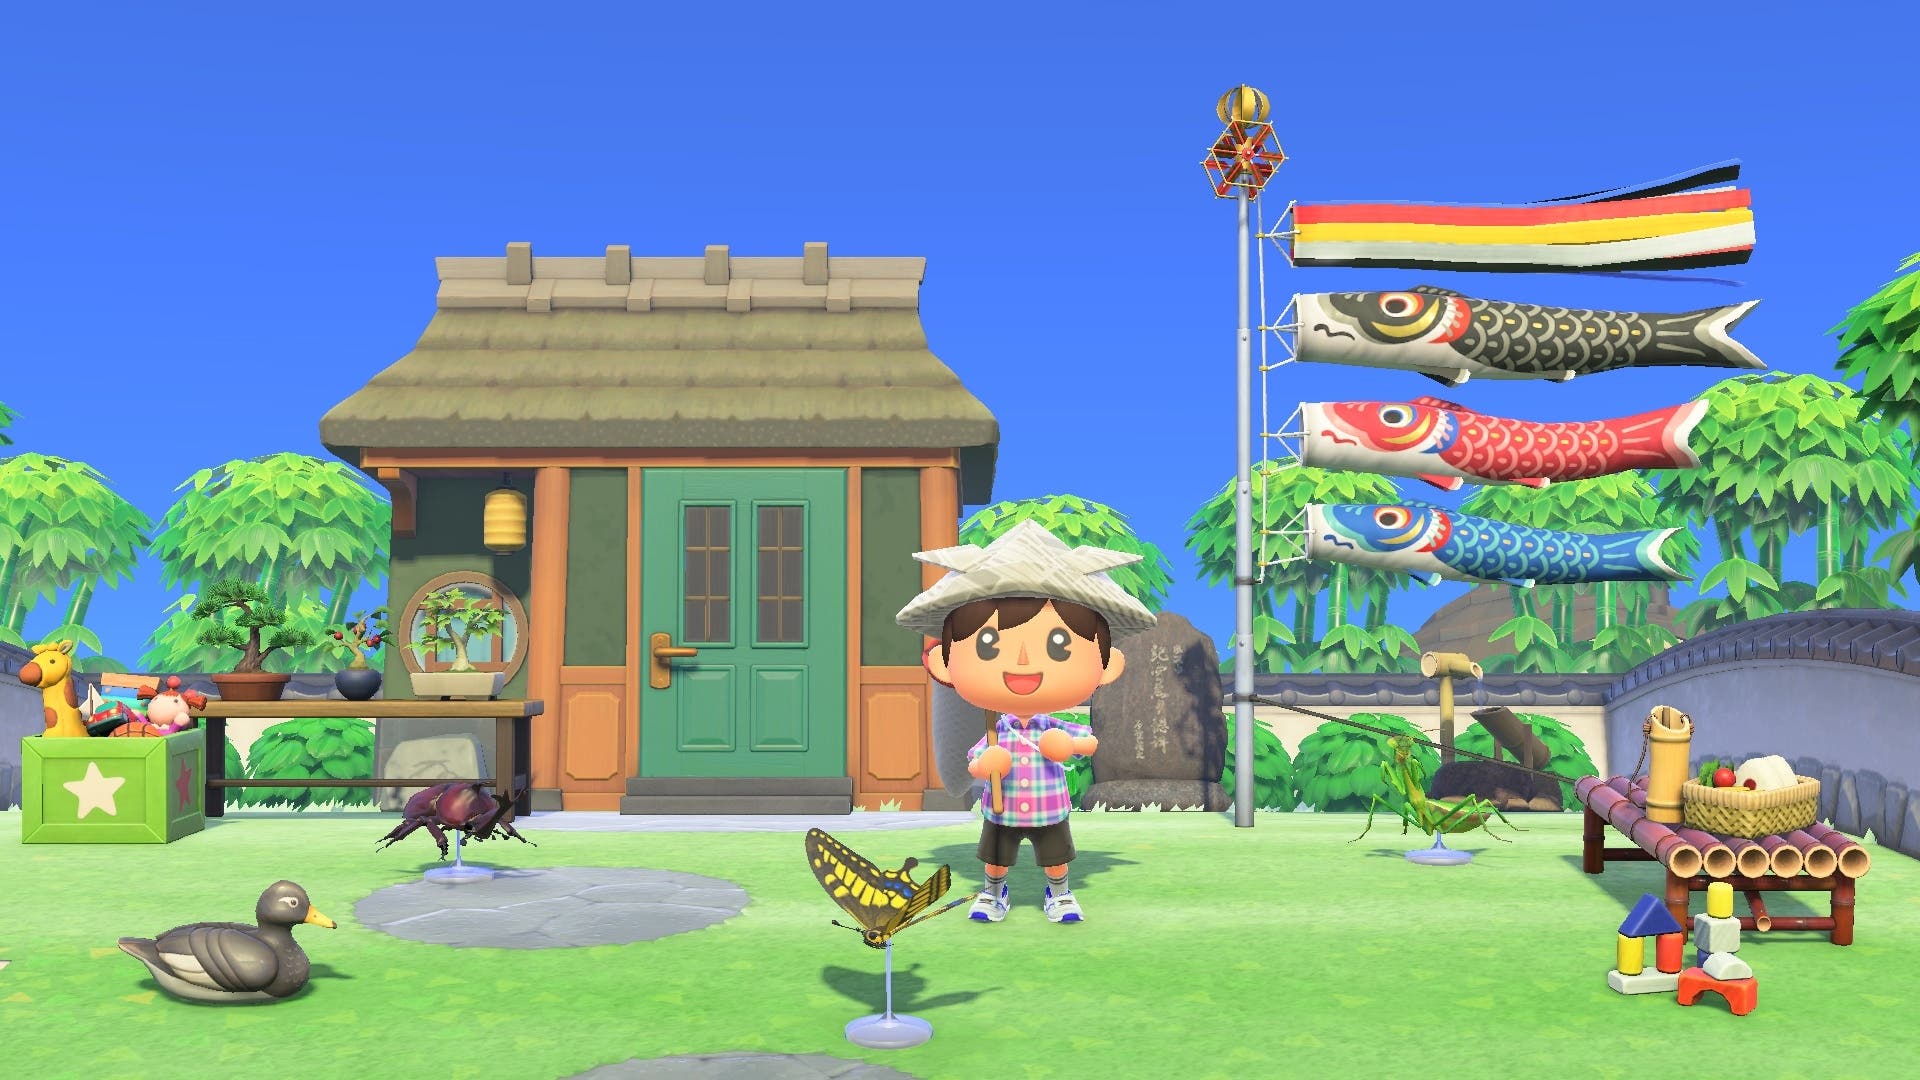 Nintendo afirma con estos mensajes que la casa de vecino de esta captura de Animal Crossing: New Horizons es un error